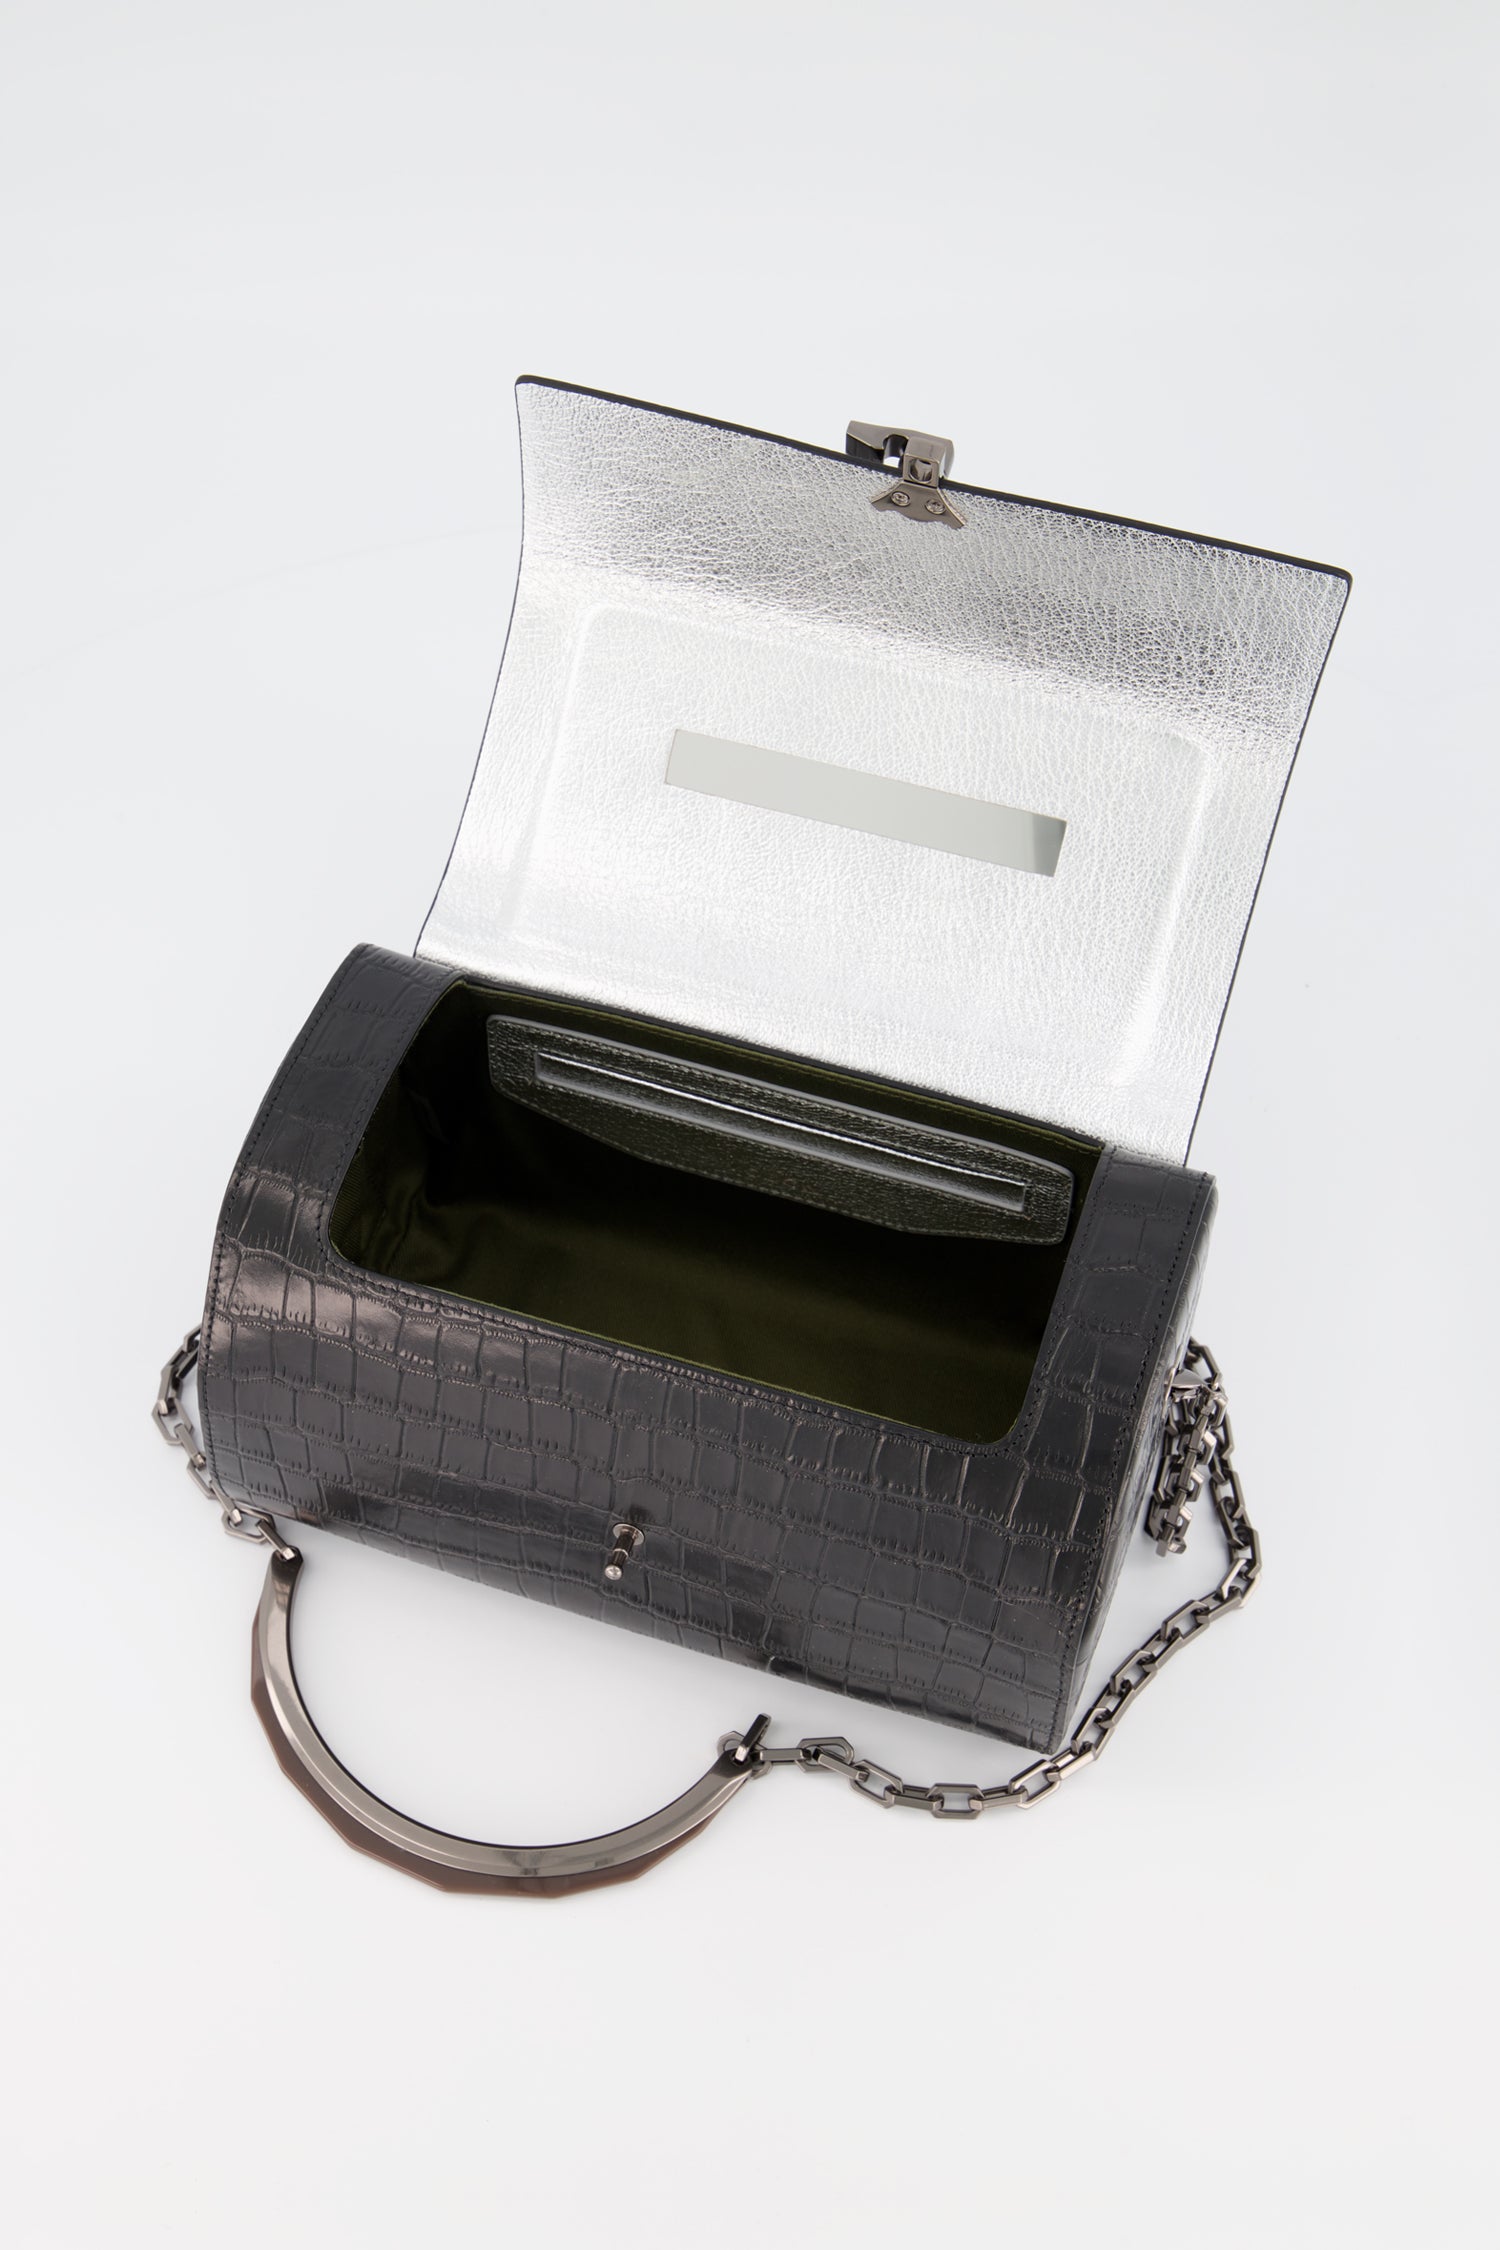 The Volon Black Crocodile Print PO Trunk Bag